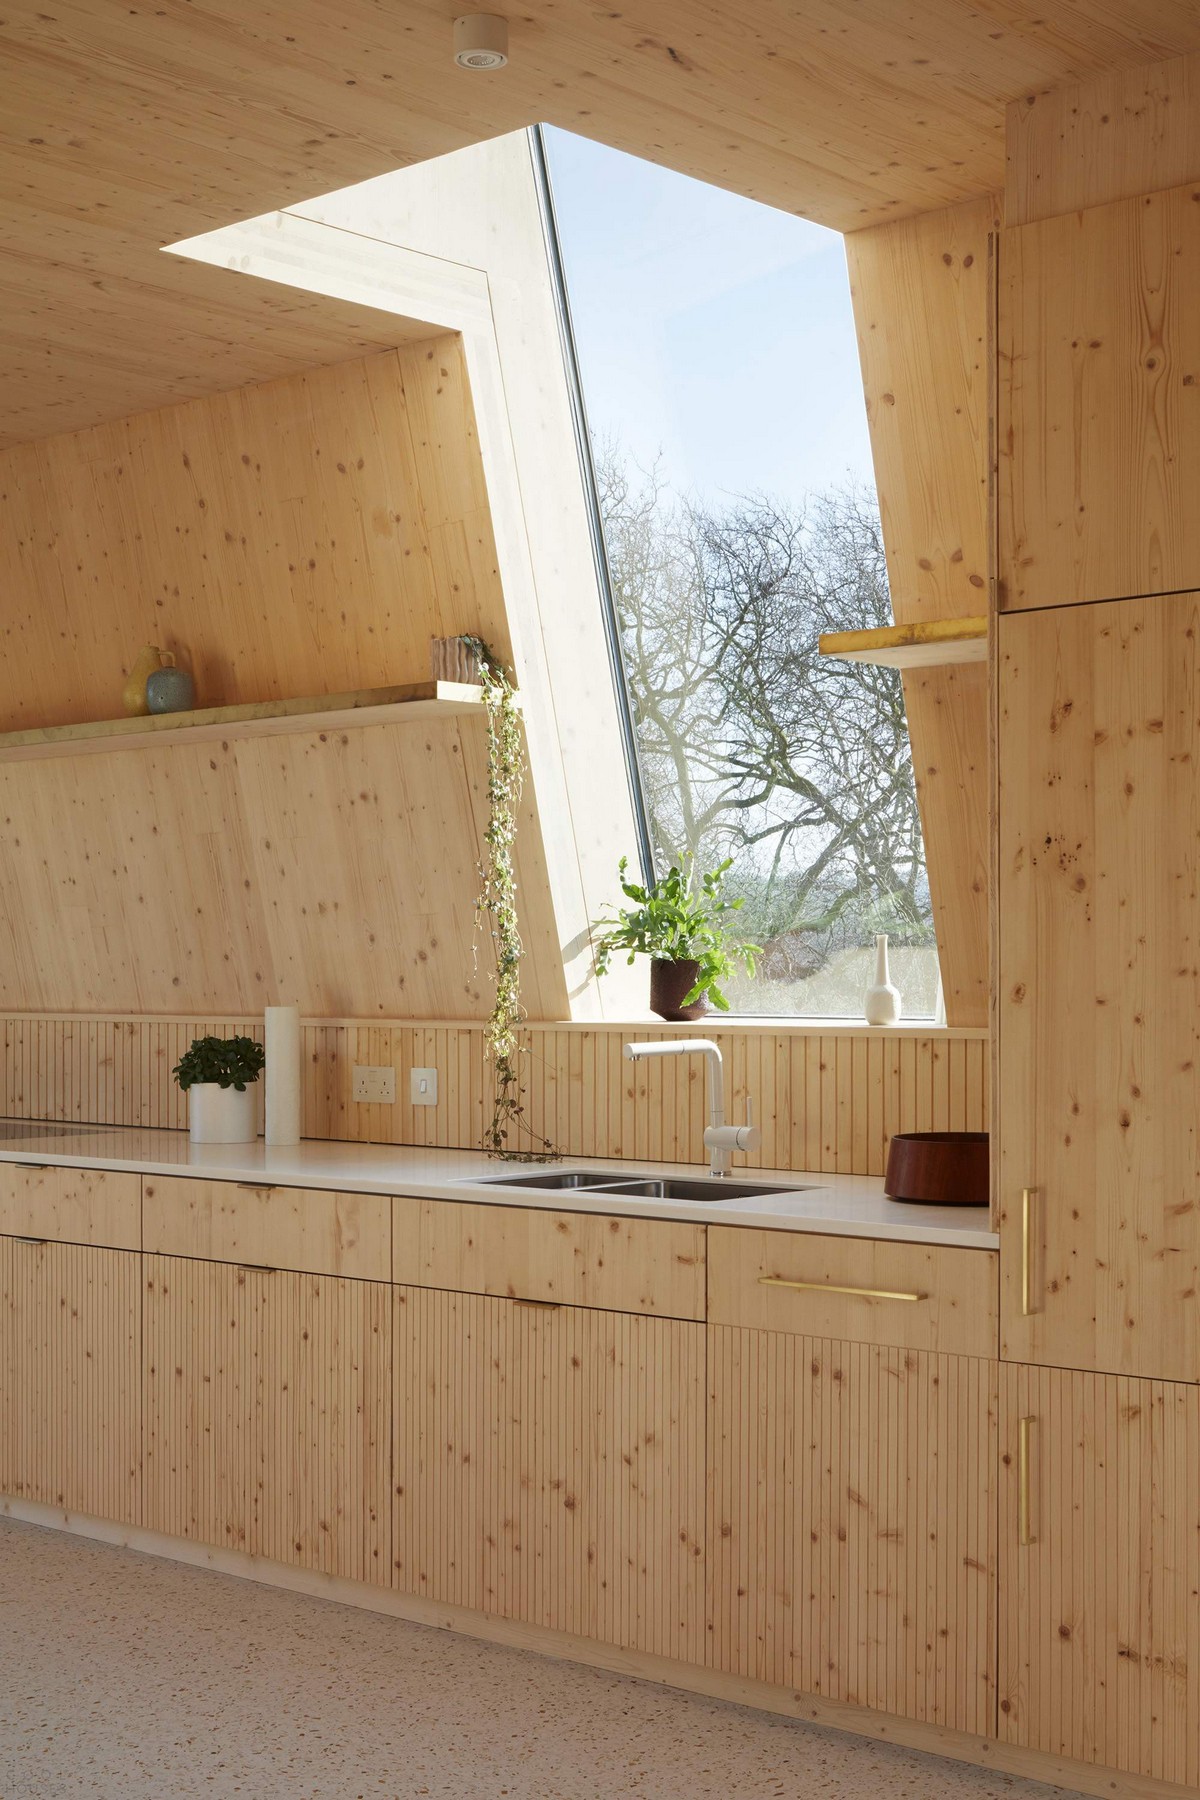 Жилой комплекс с экологически чистыми апартаментами в Лондоне